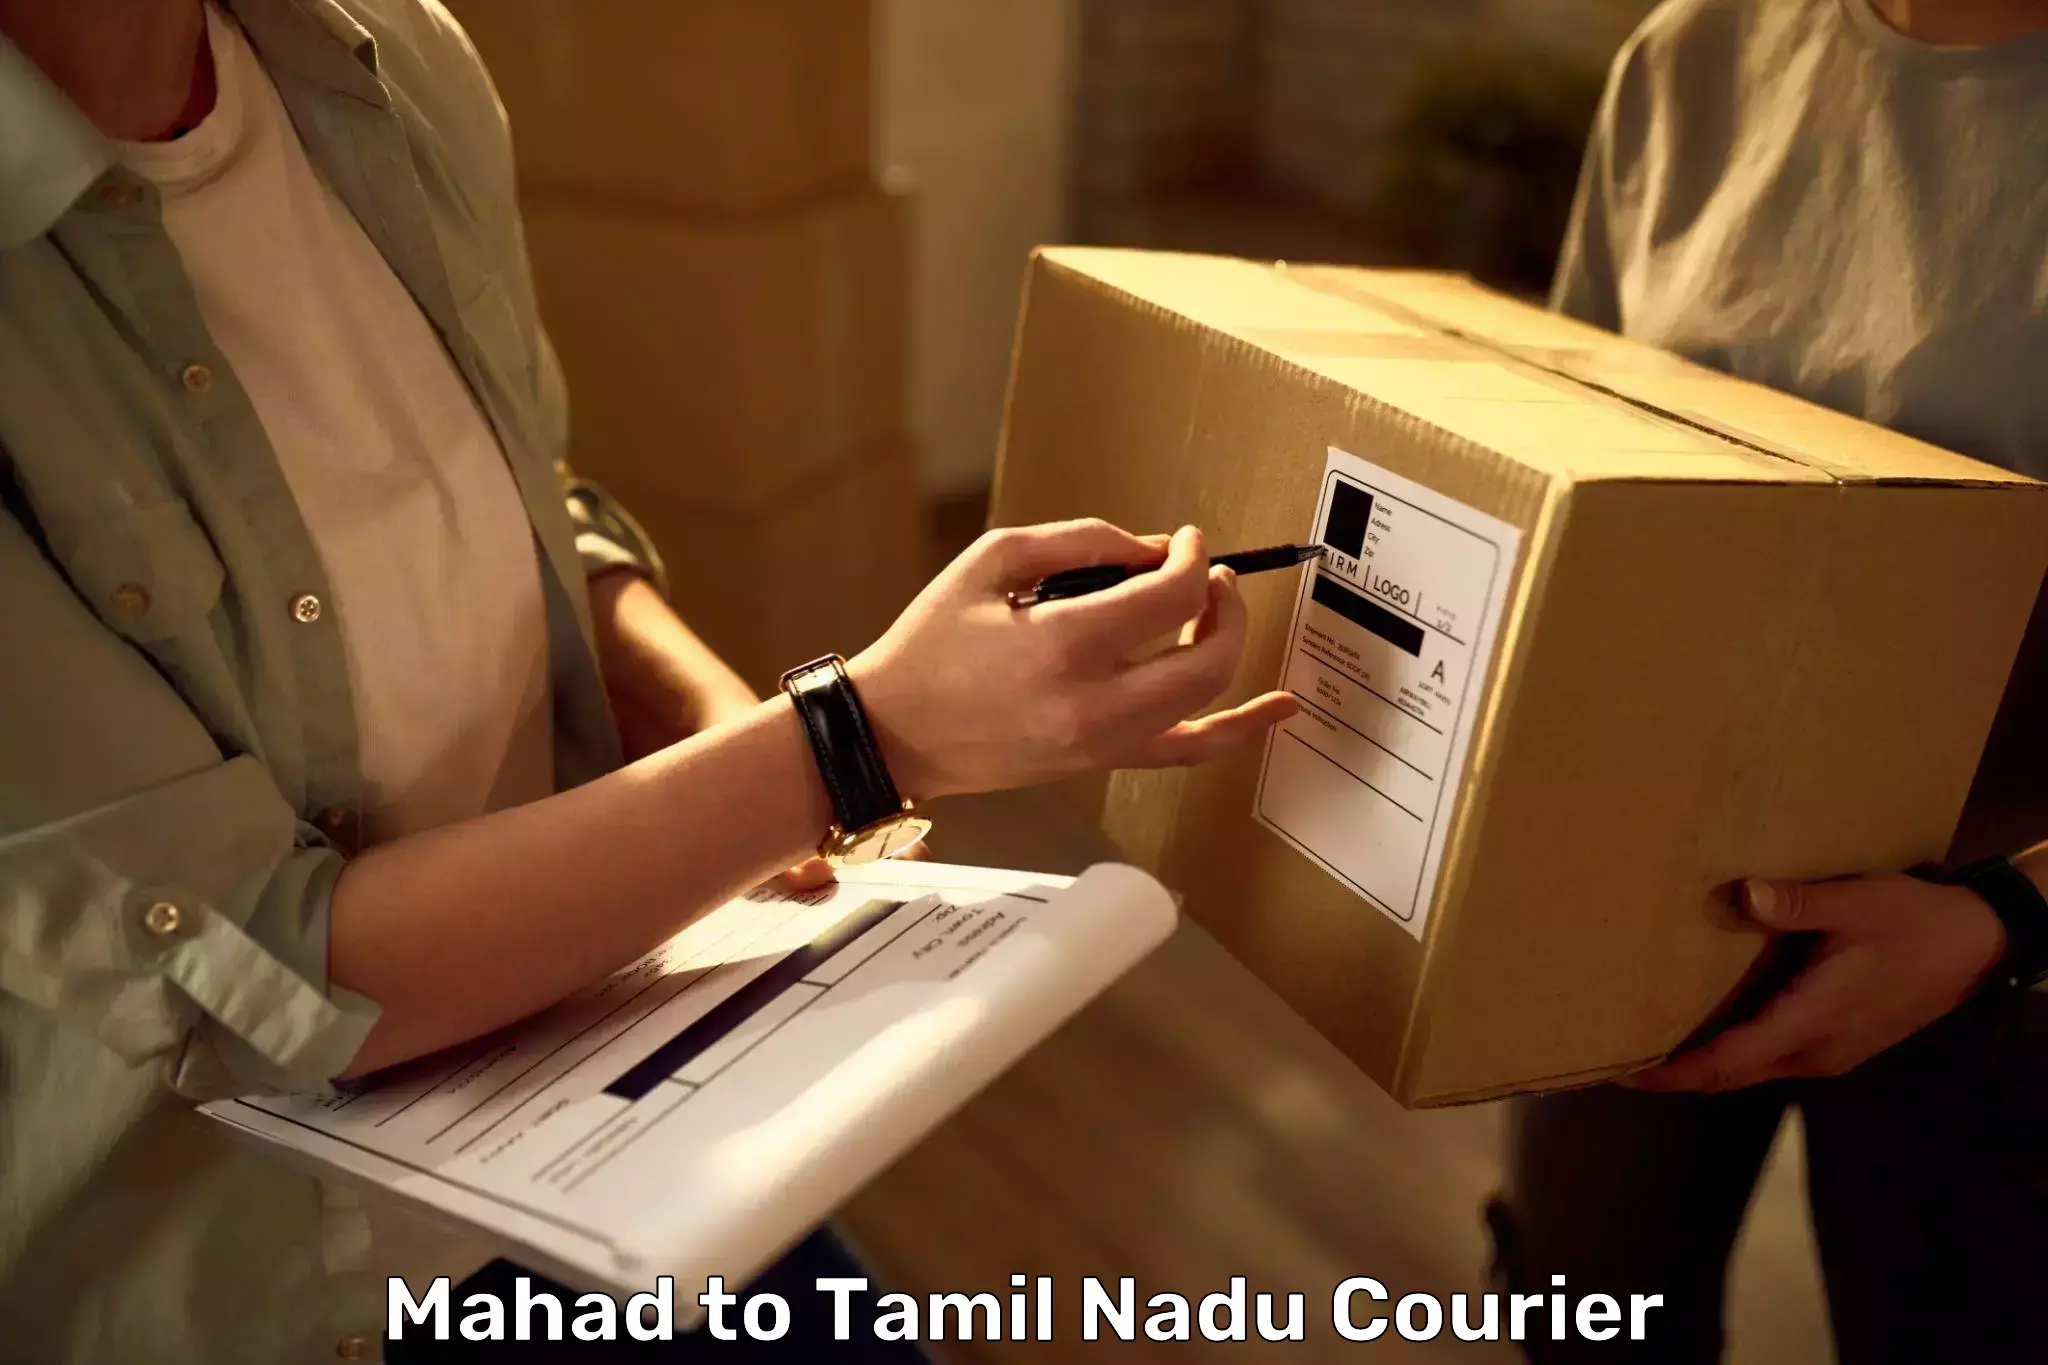 Automated luggage transport Mahad to Tamil Nadu